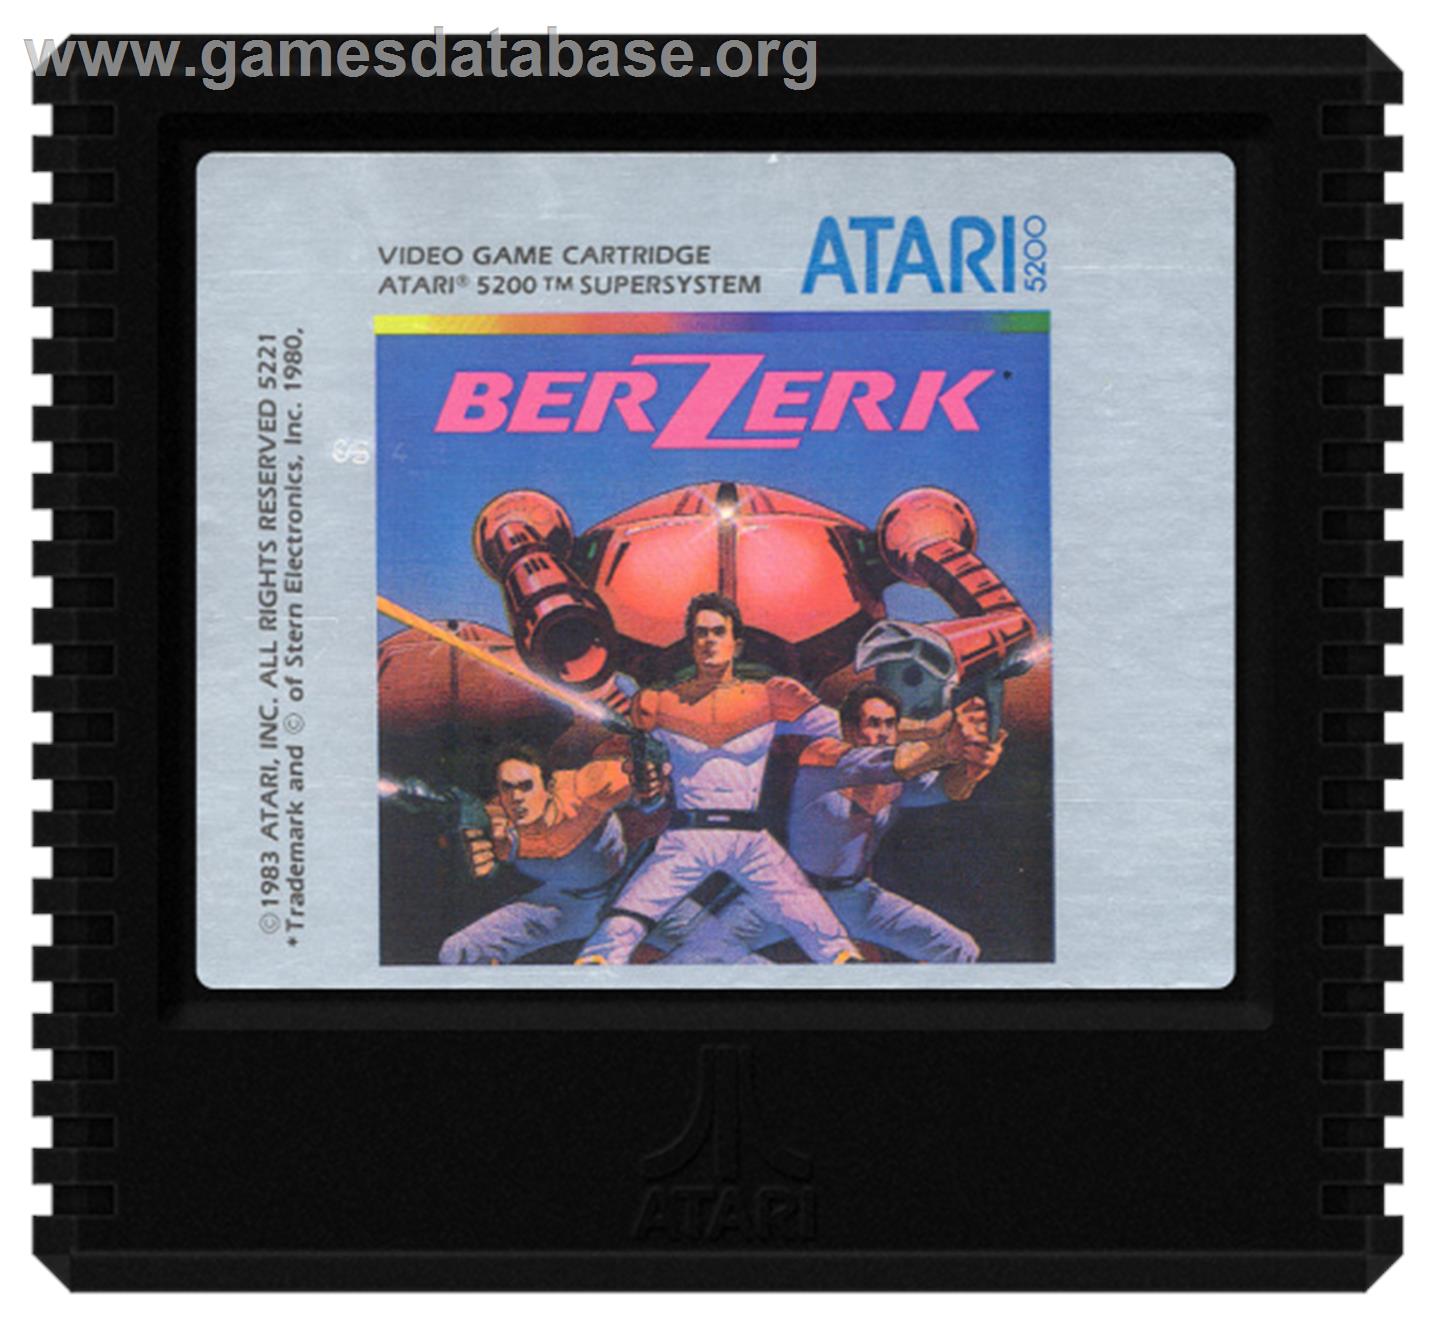 Berzerk - Atari 5200 - Artwork - Cartridge